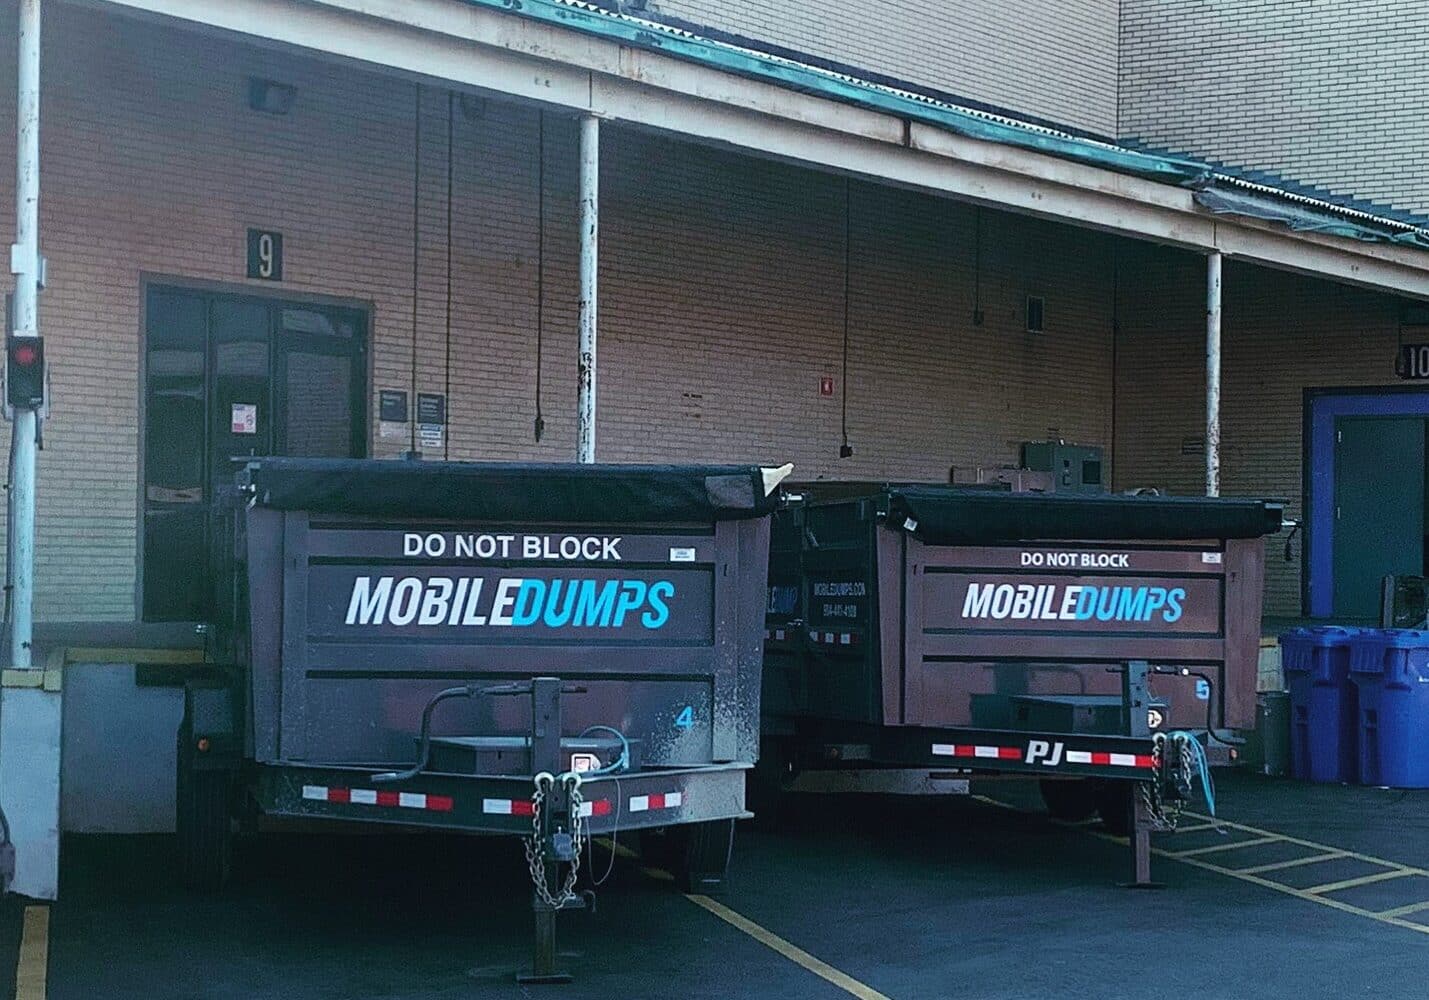 Mobile Dumpster Rental In 2020